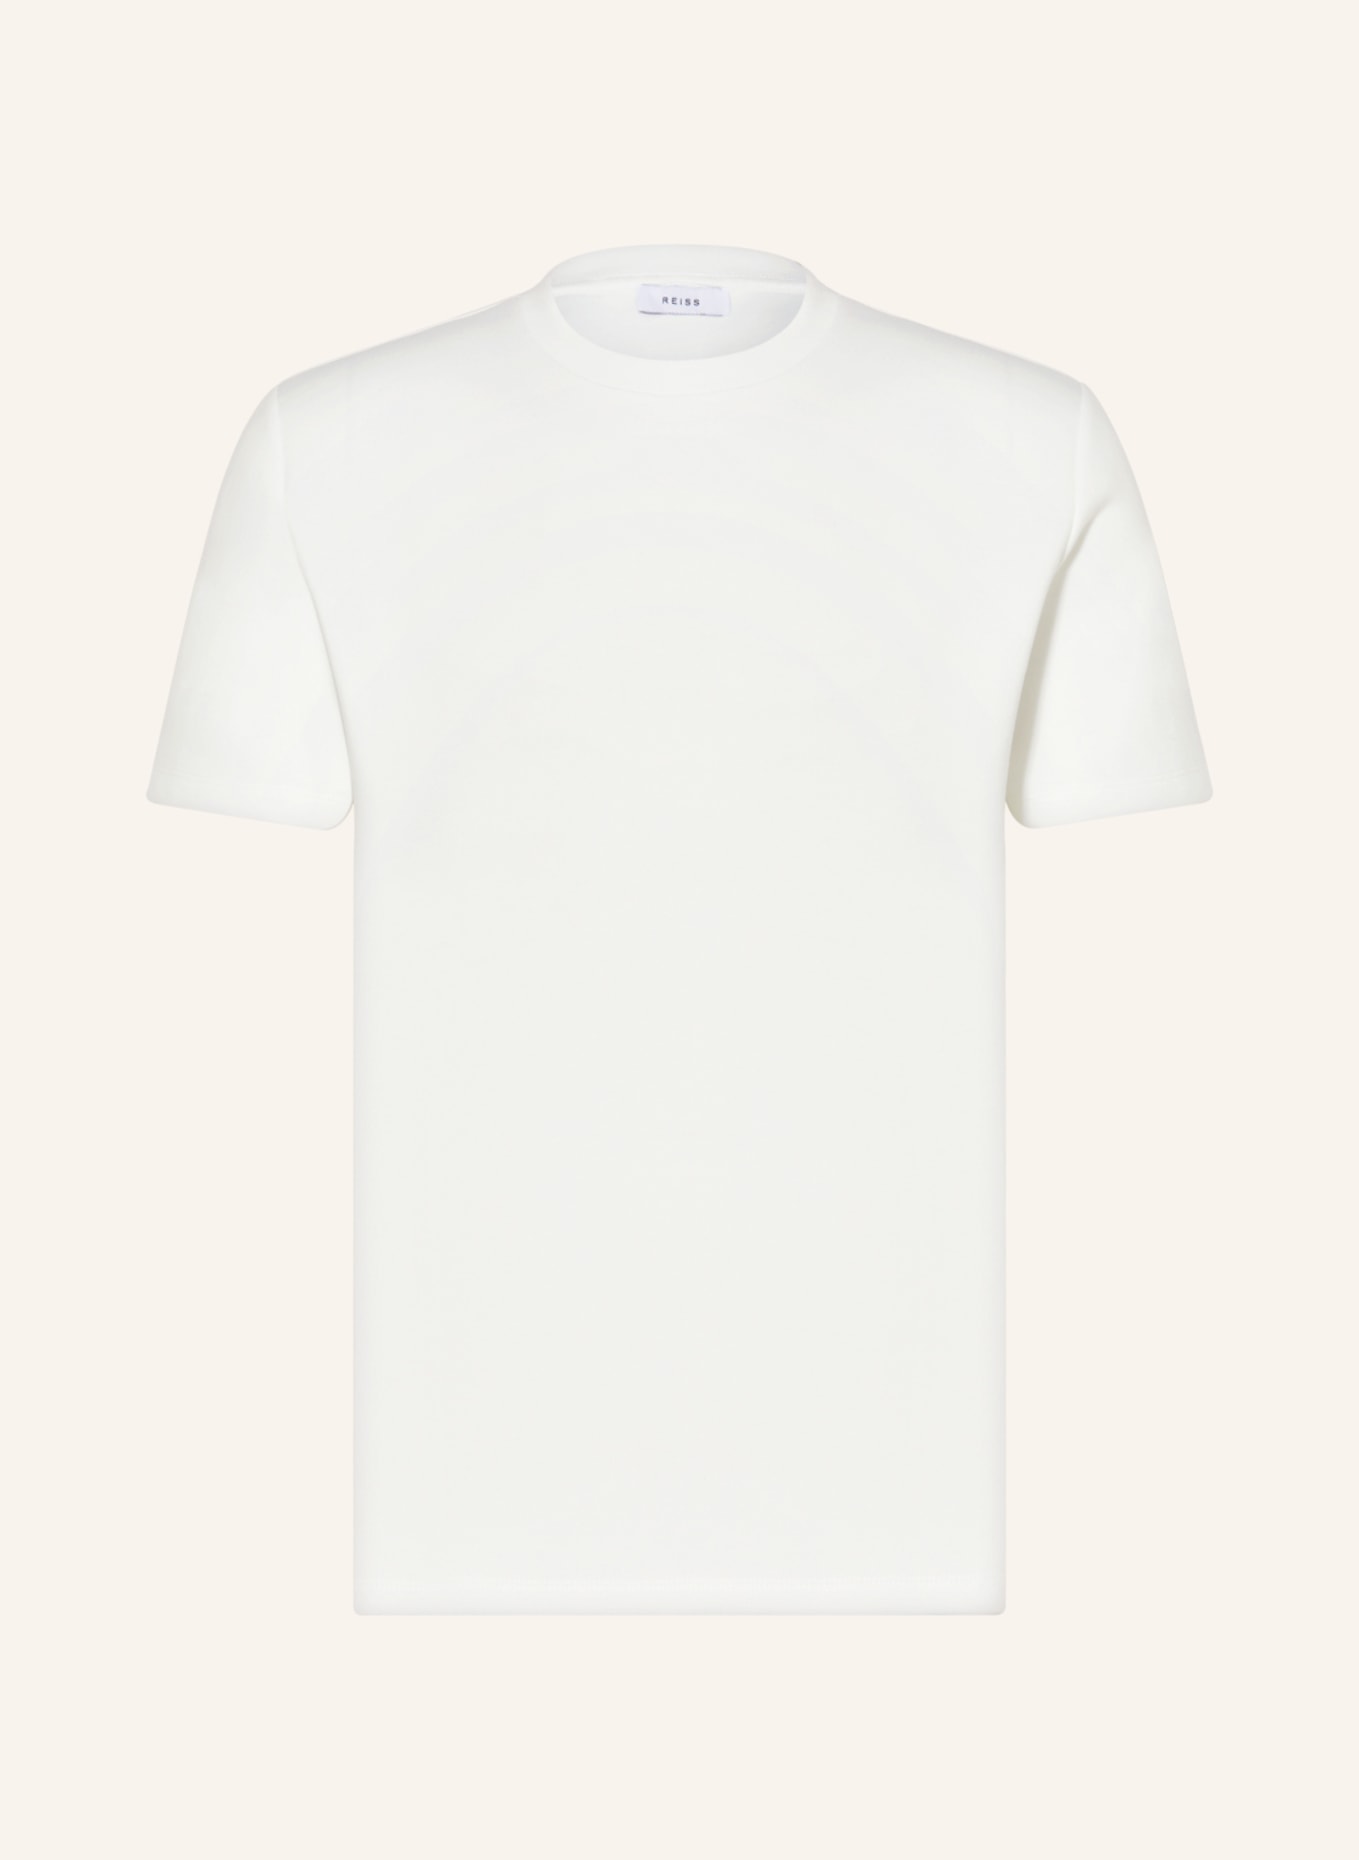 REISS T-Shirt BRADLEY, Farbe: WEISS (Bild 1)